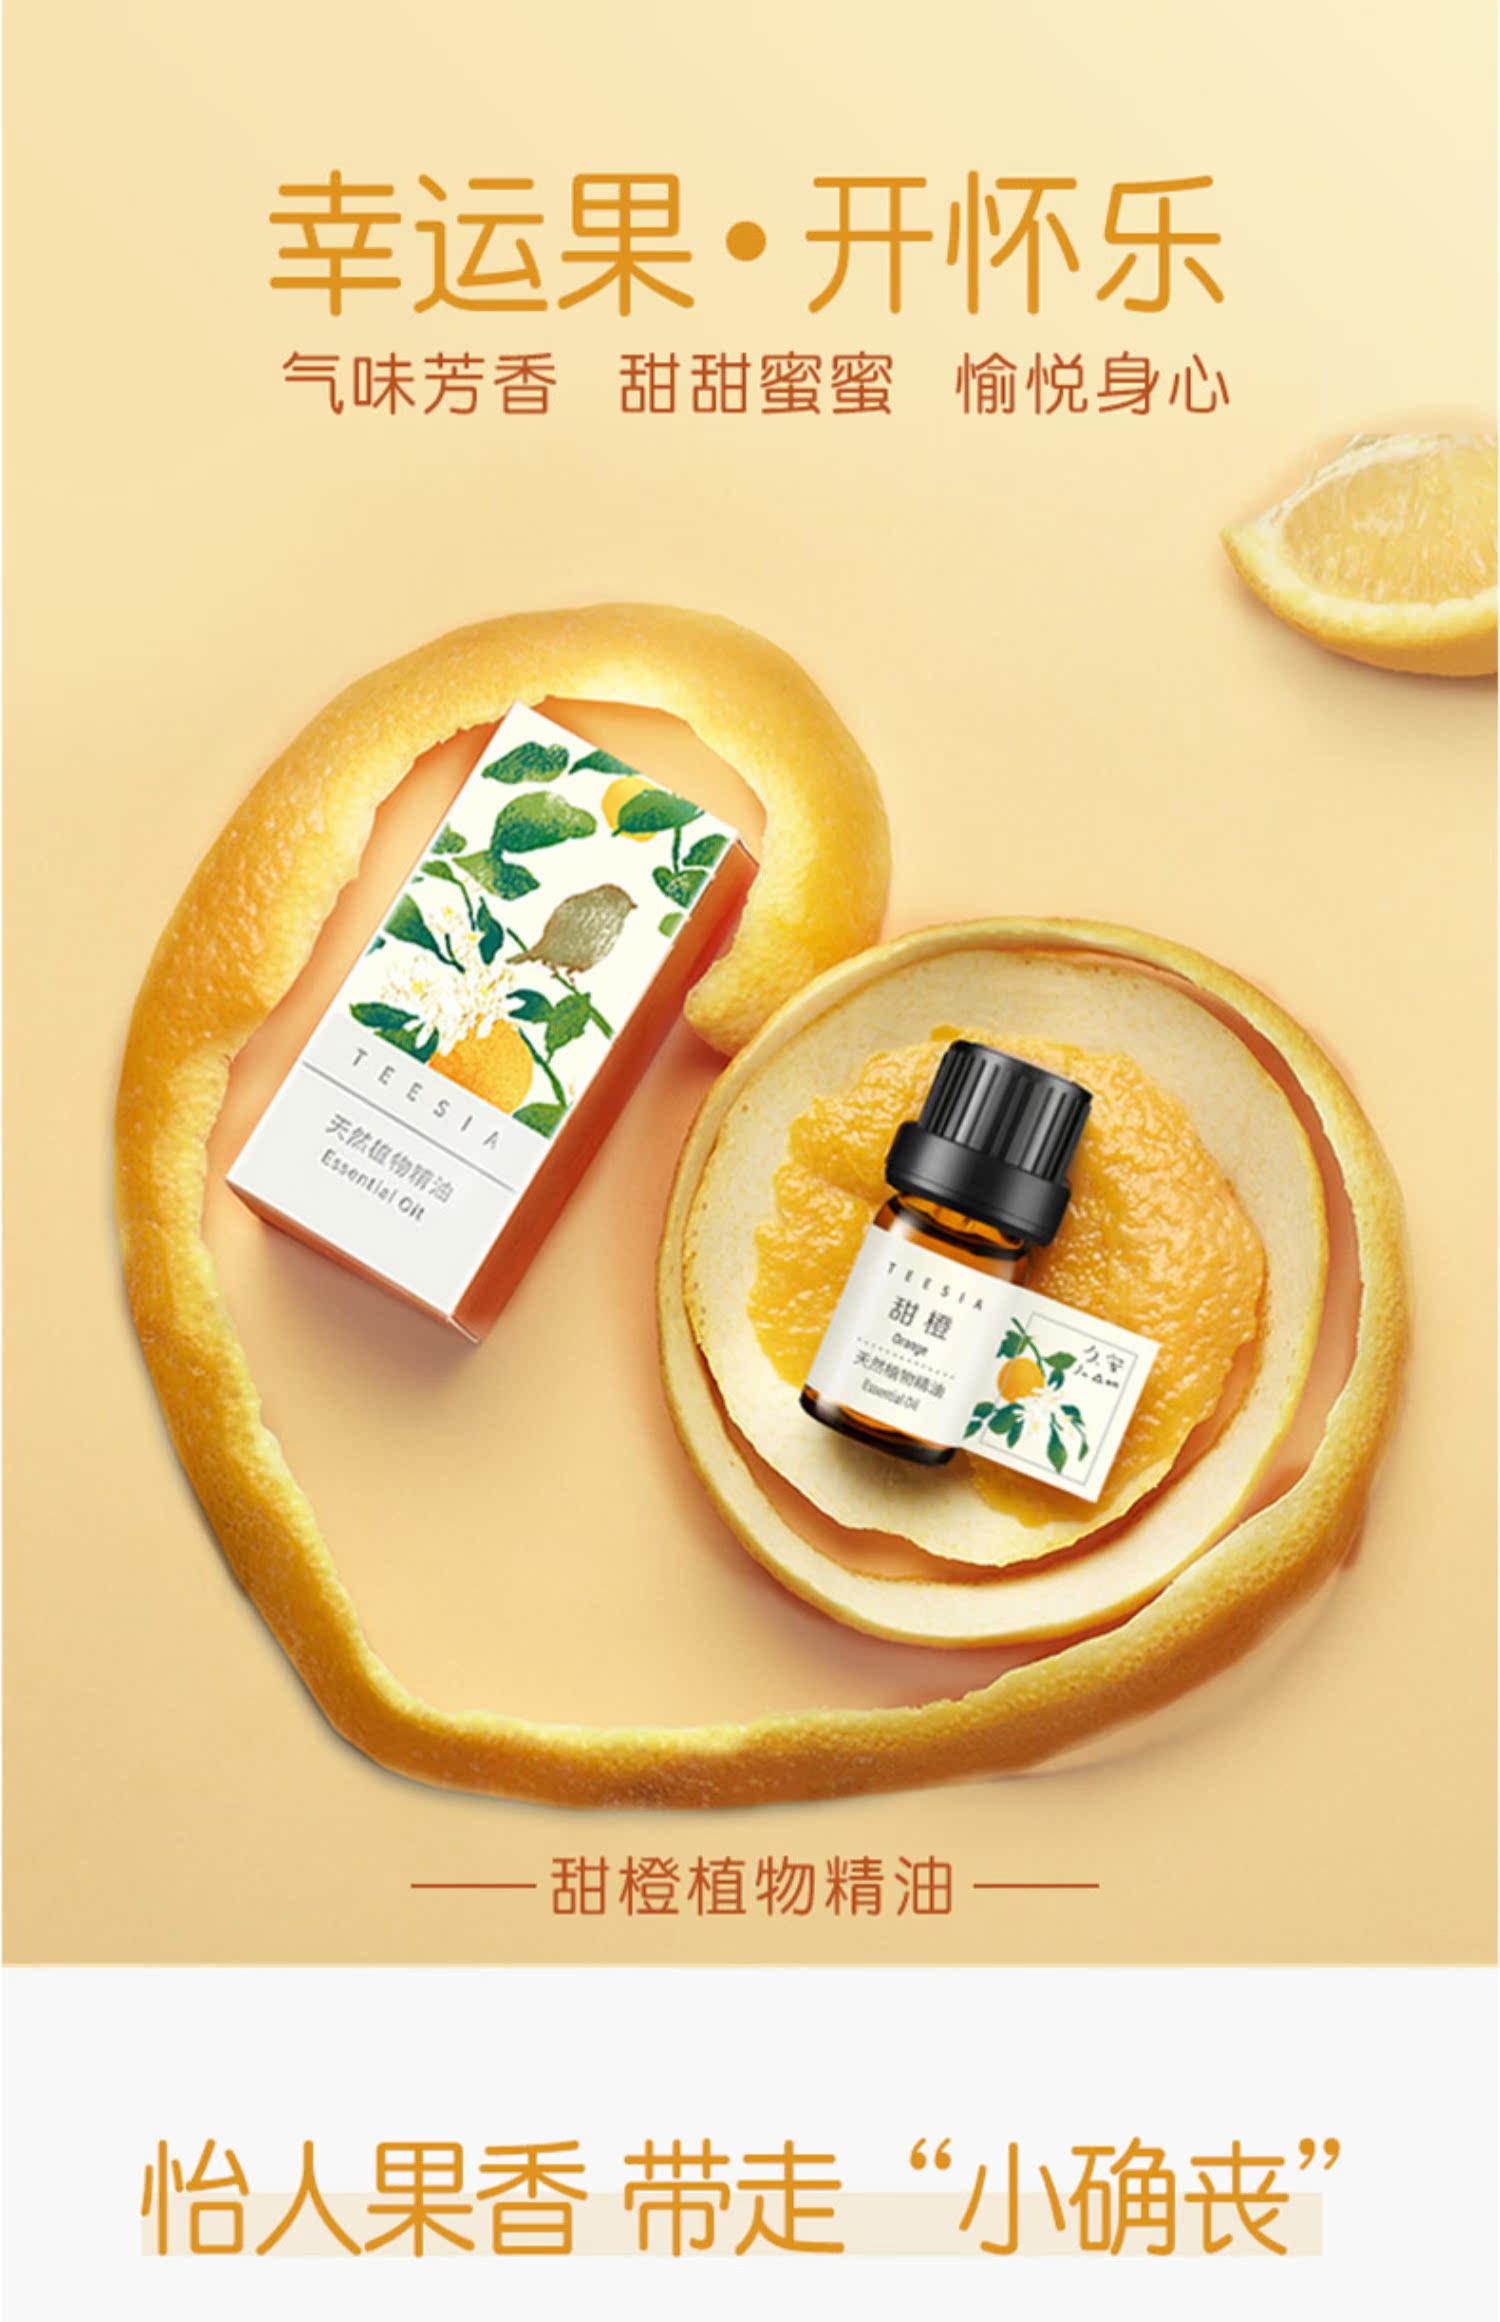 tinh dầu hương trầm Jiuan Xingshe Tinh dầu cam ngọt Thực vật tự nhiên Đơn phương Tinh dầu Hương liệu Tinh dầu thơm Hương liệu pháp 5ML - Sản phẩm hương liệu nhang sach